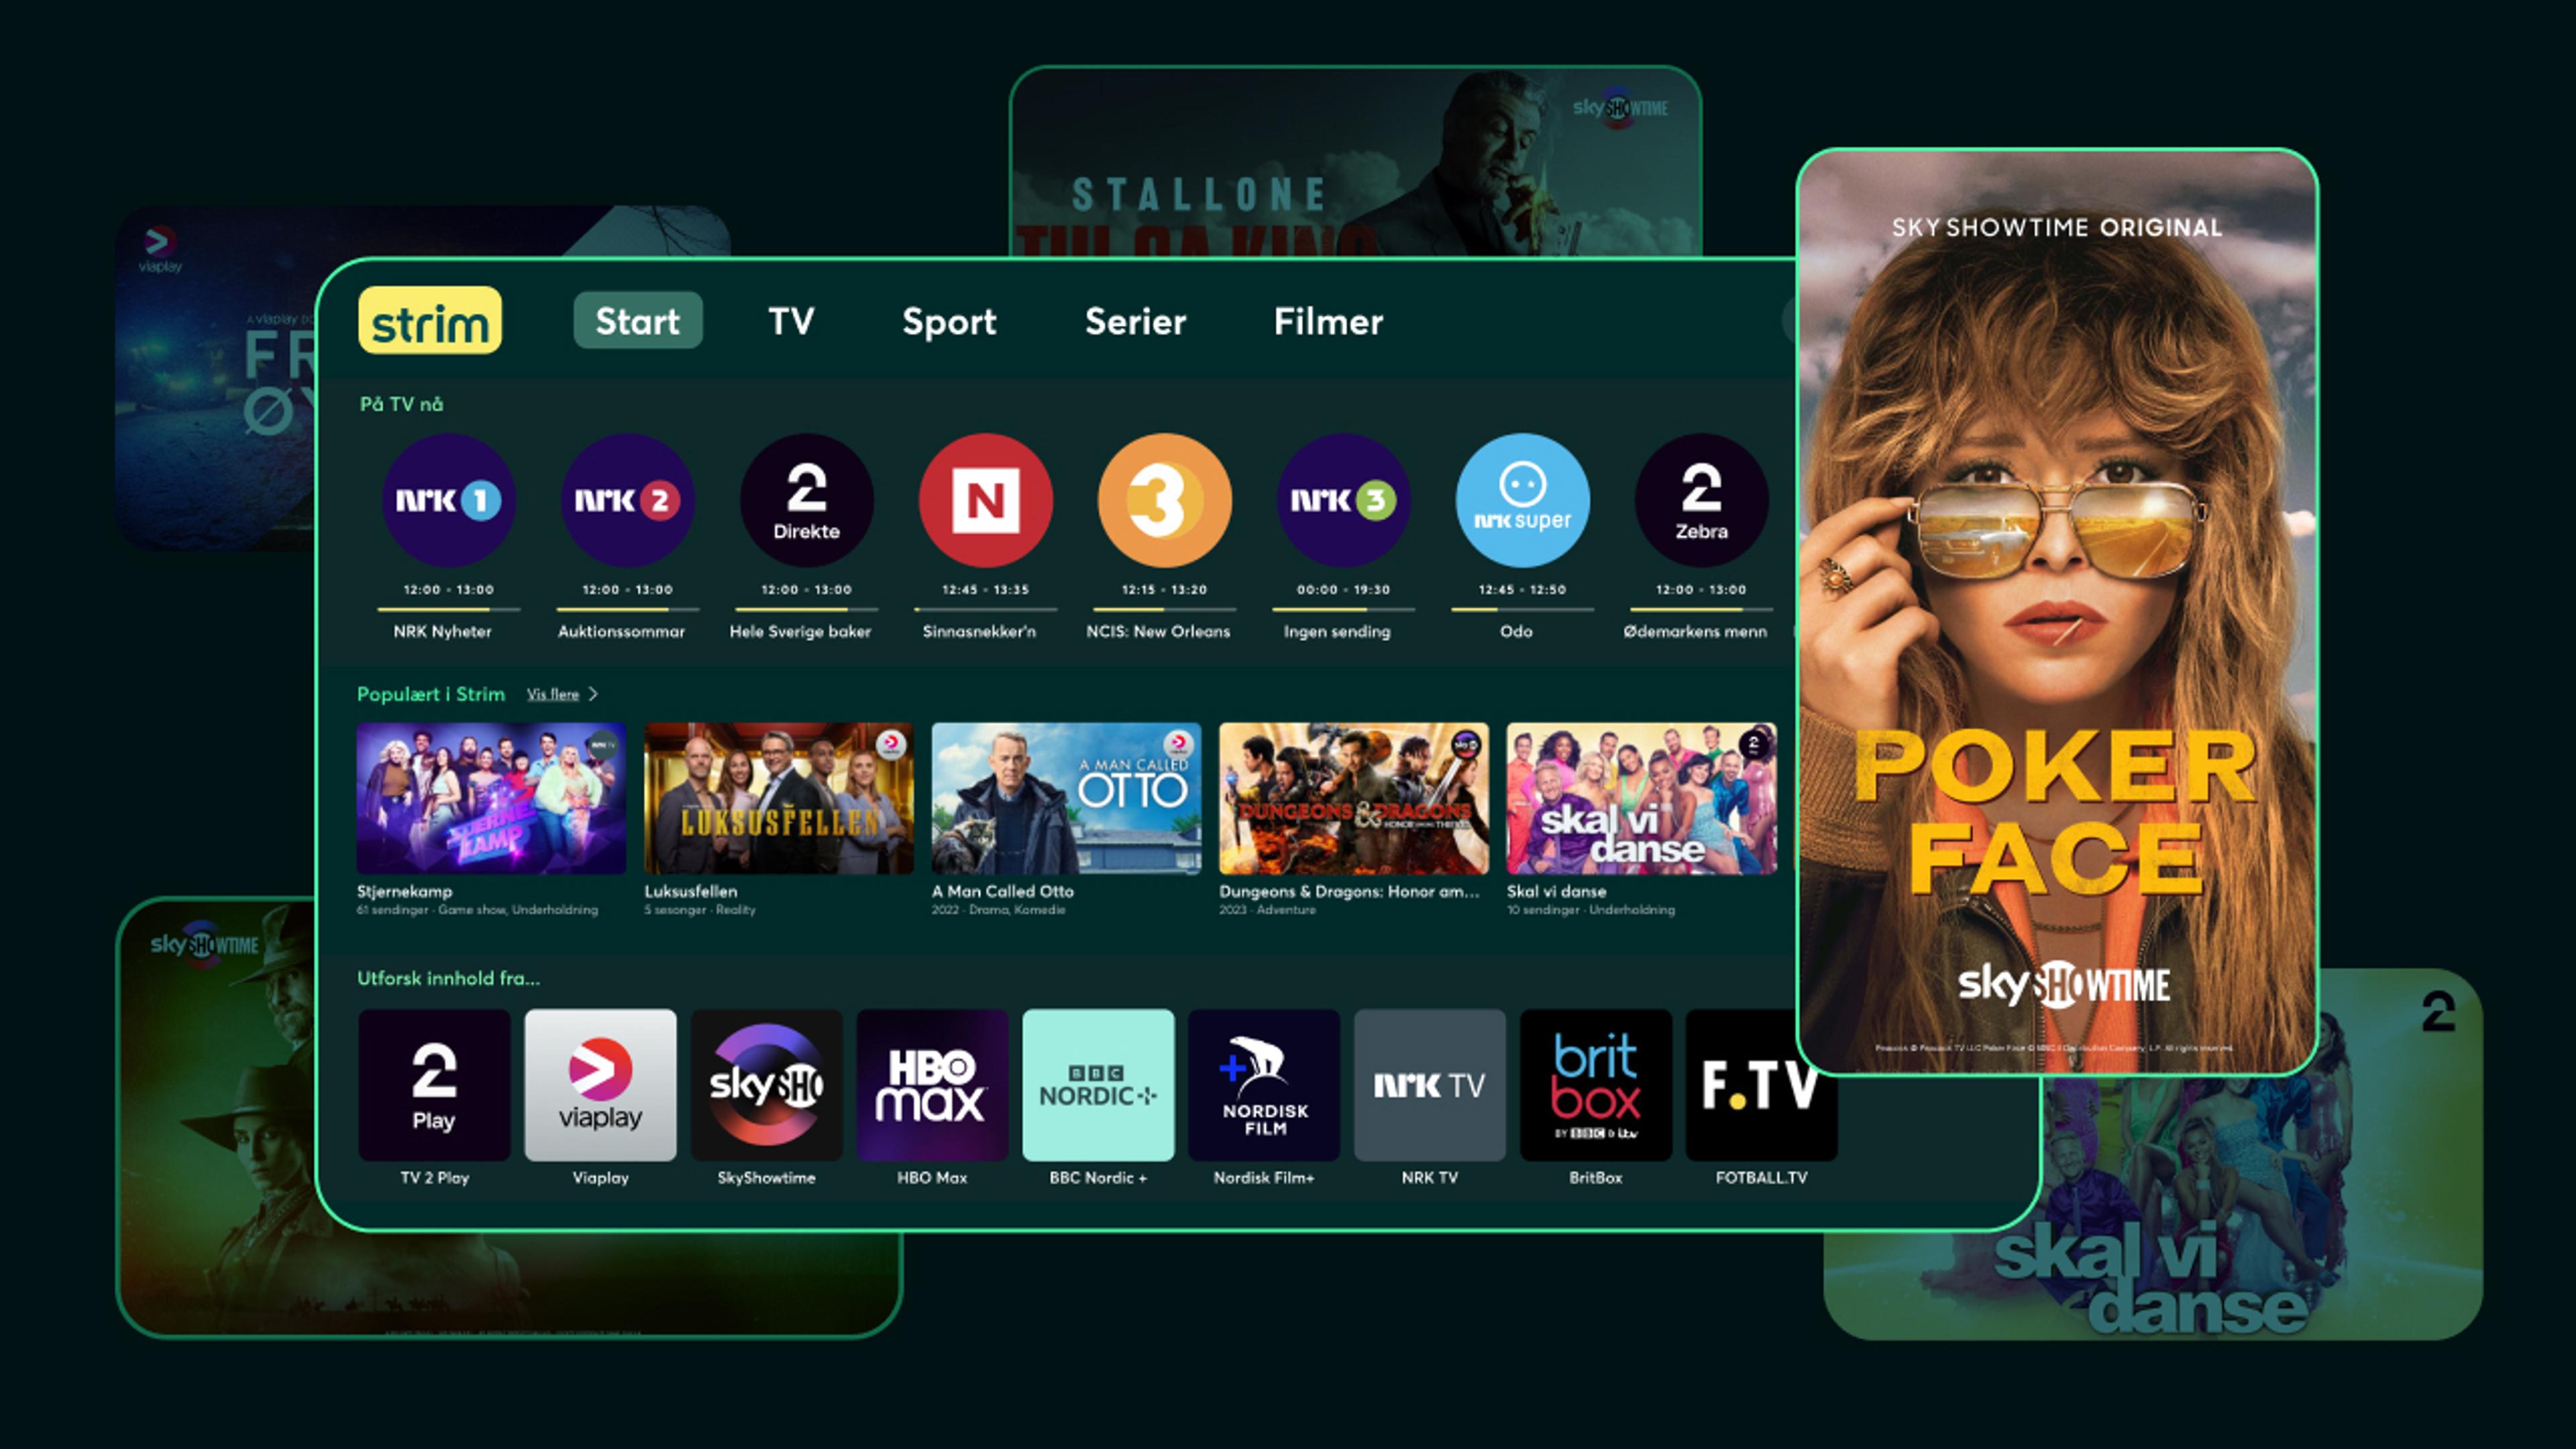 Skjermbilde av Strim app for Tablet og forsidebilde for serien Poker Face på SkyShowtime.